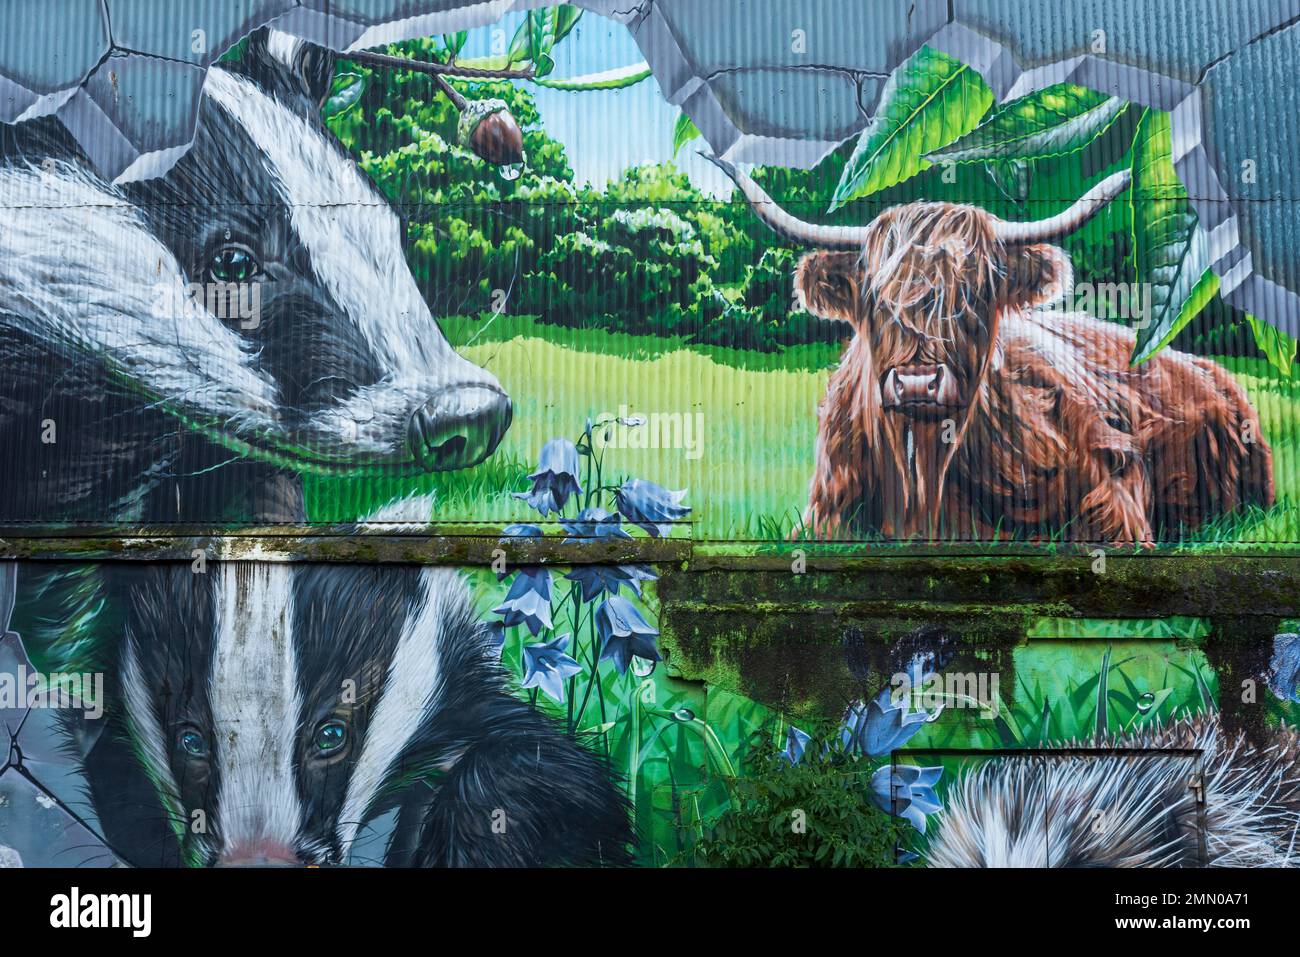 Royaume-Uni, Écosse, Glasgow, City Centre Mural Trail, peinture murale peinte par smug en 2013, animaux des parcs de Glasgow Banque D'Images